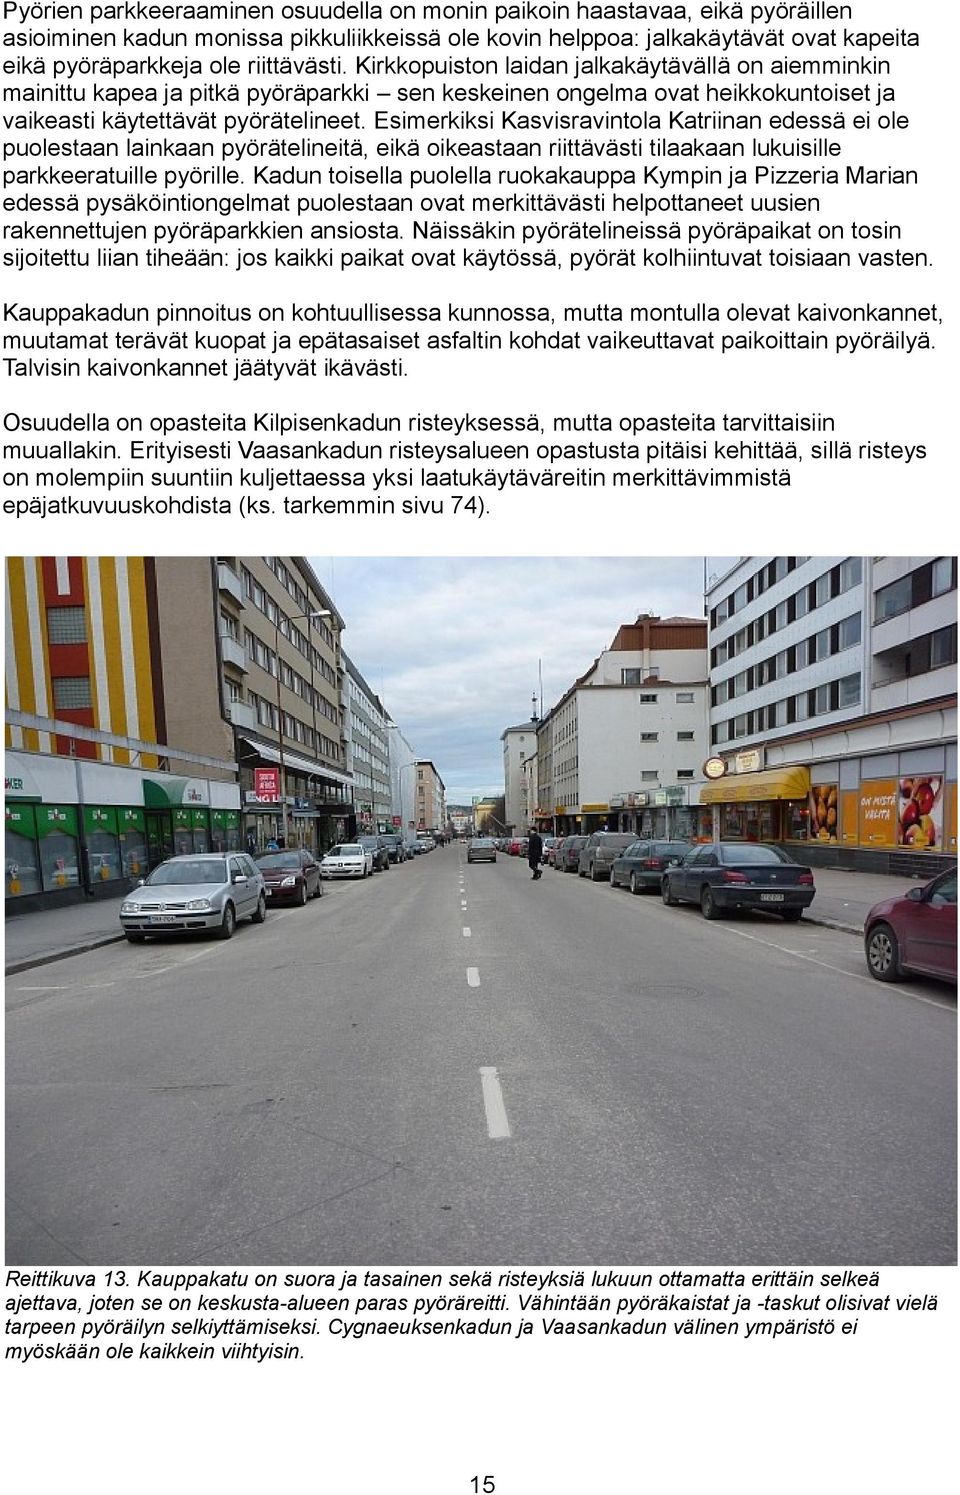 Esimerkiksi Kasvisravintola Katriinan edessä ei ole puolestaan lainkaan pyörätelineitä, eikä oikeastaan riittävästi tilaakaan lukuisille parkkeeratuille pyörille.